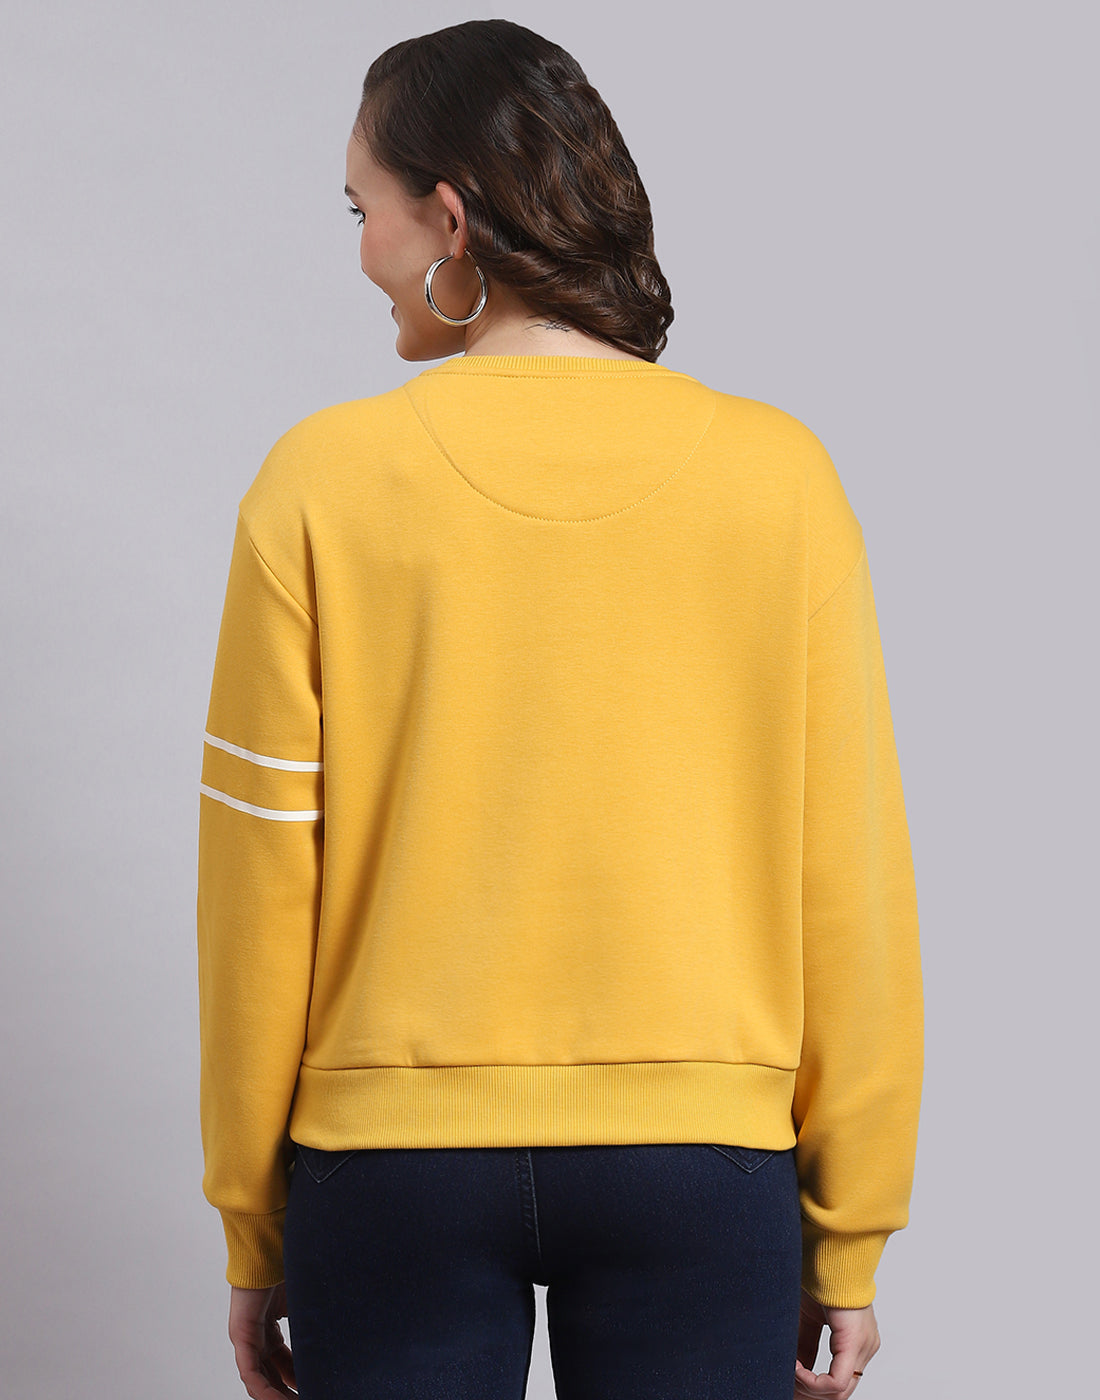 Women Yellow Printed Round Neck Full Sleeve Sweatshirt